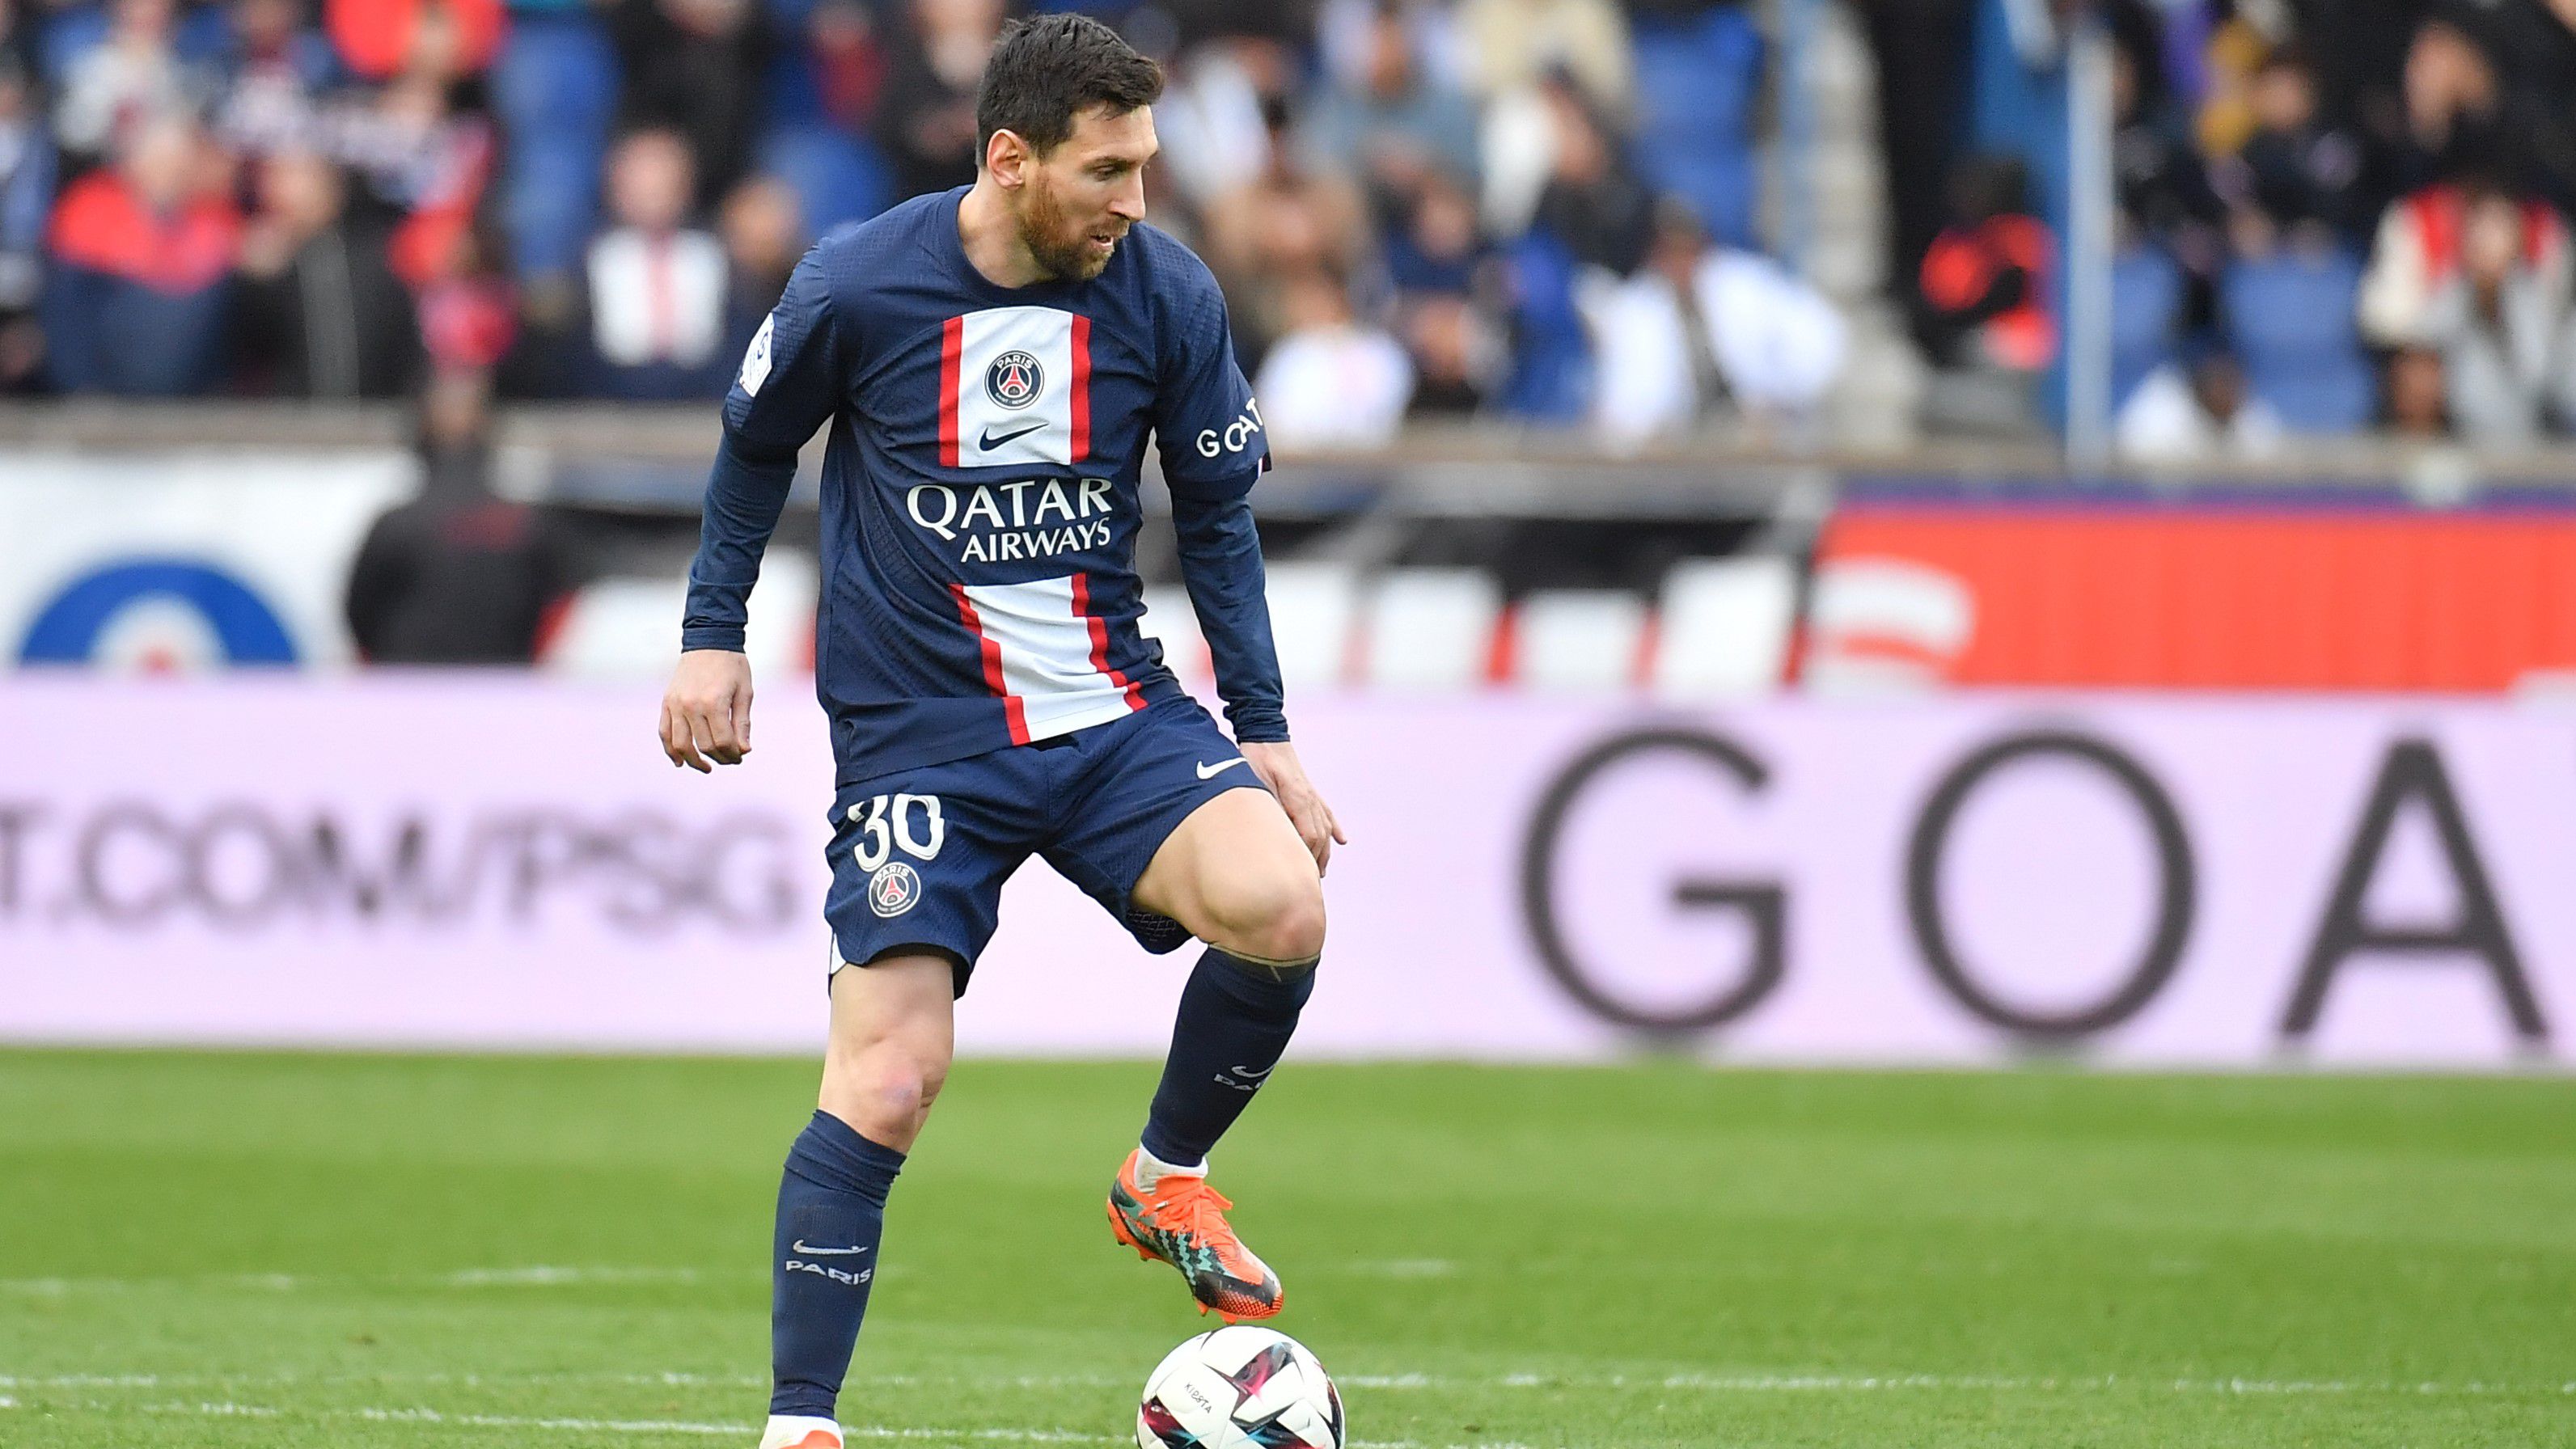 A Daily Mail információja szerint Lionel Messi arról beszélt argentin csapattársainak, hogy a következő idényt a PSG-nél szeretné tölteni.